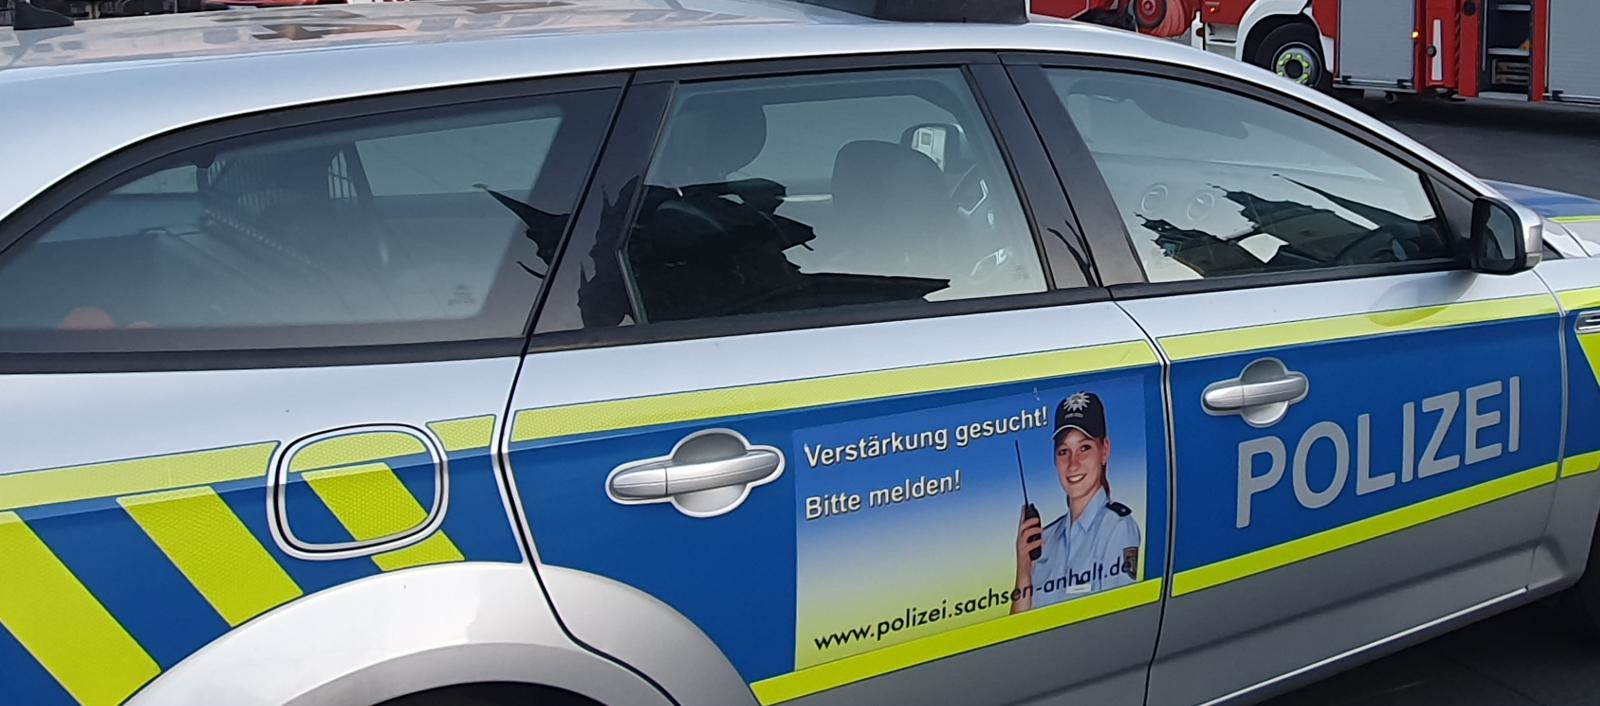 Polizeiinspektion Dessau-Roßlau versteigert ausgemusterte Polizeifahrzeuge